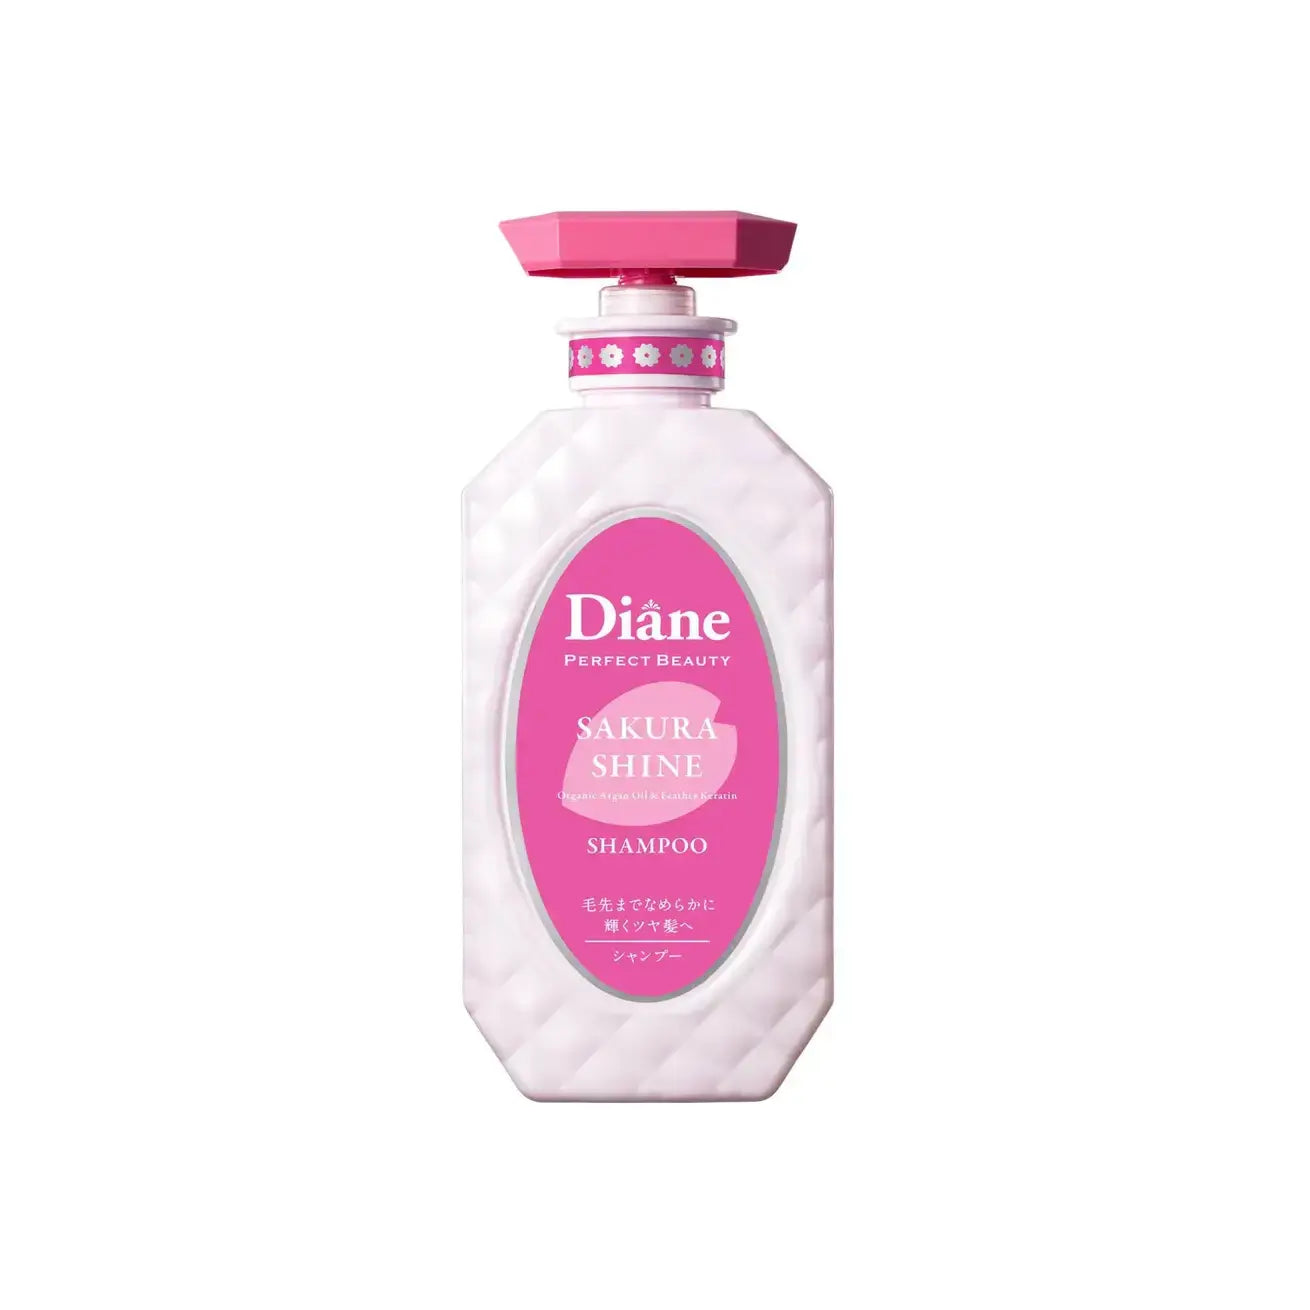 Moist Diane Perfect Beauty Extra Shine Sakura Shampoo